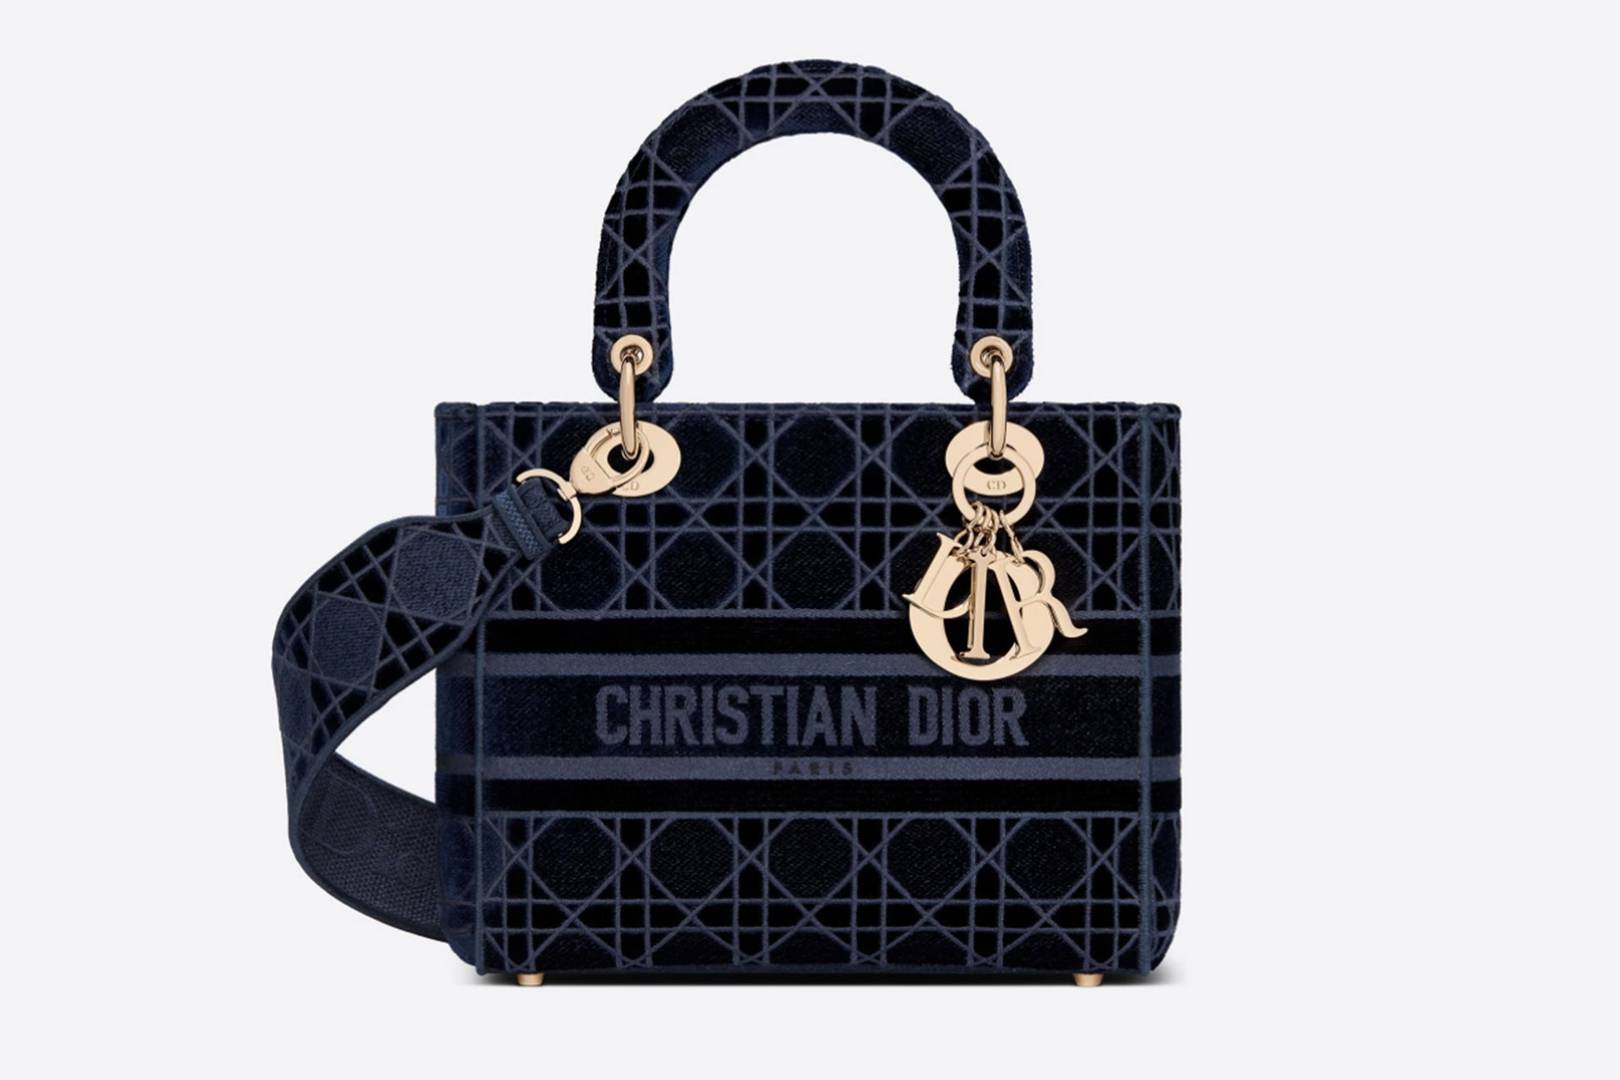 designer handbags 2019